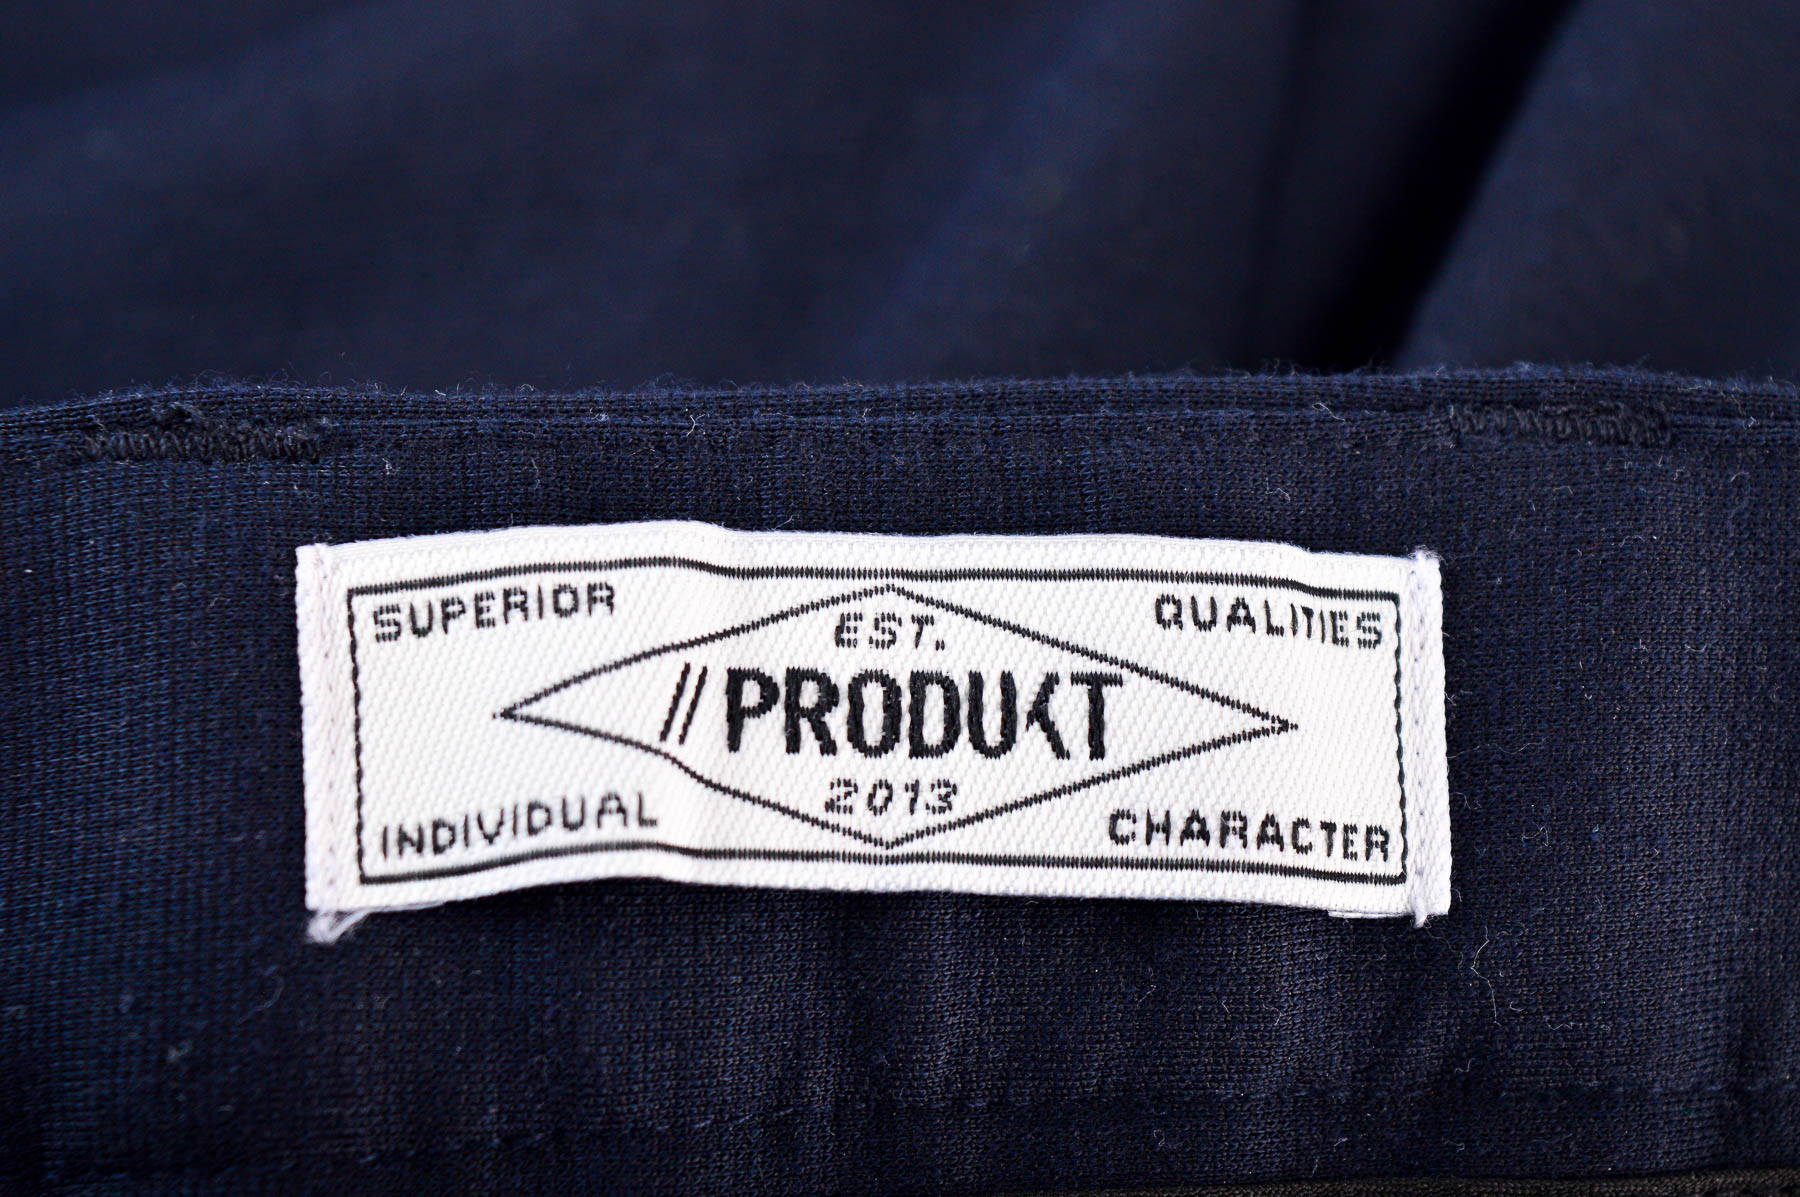 Pantalon pentru bărbați - Produkt - 2